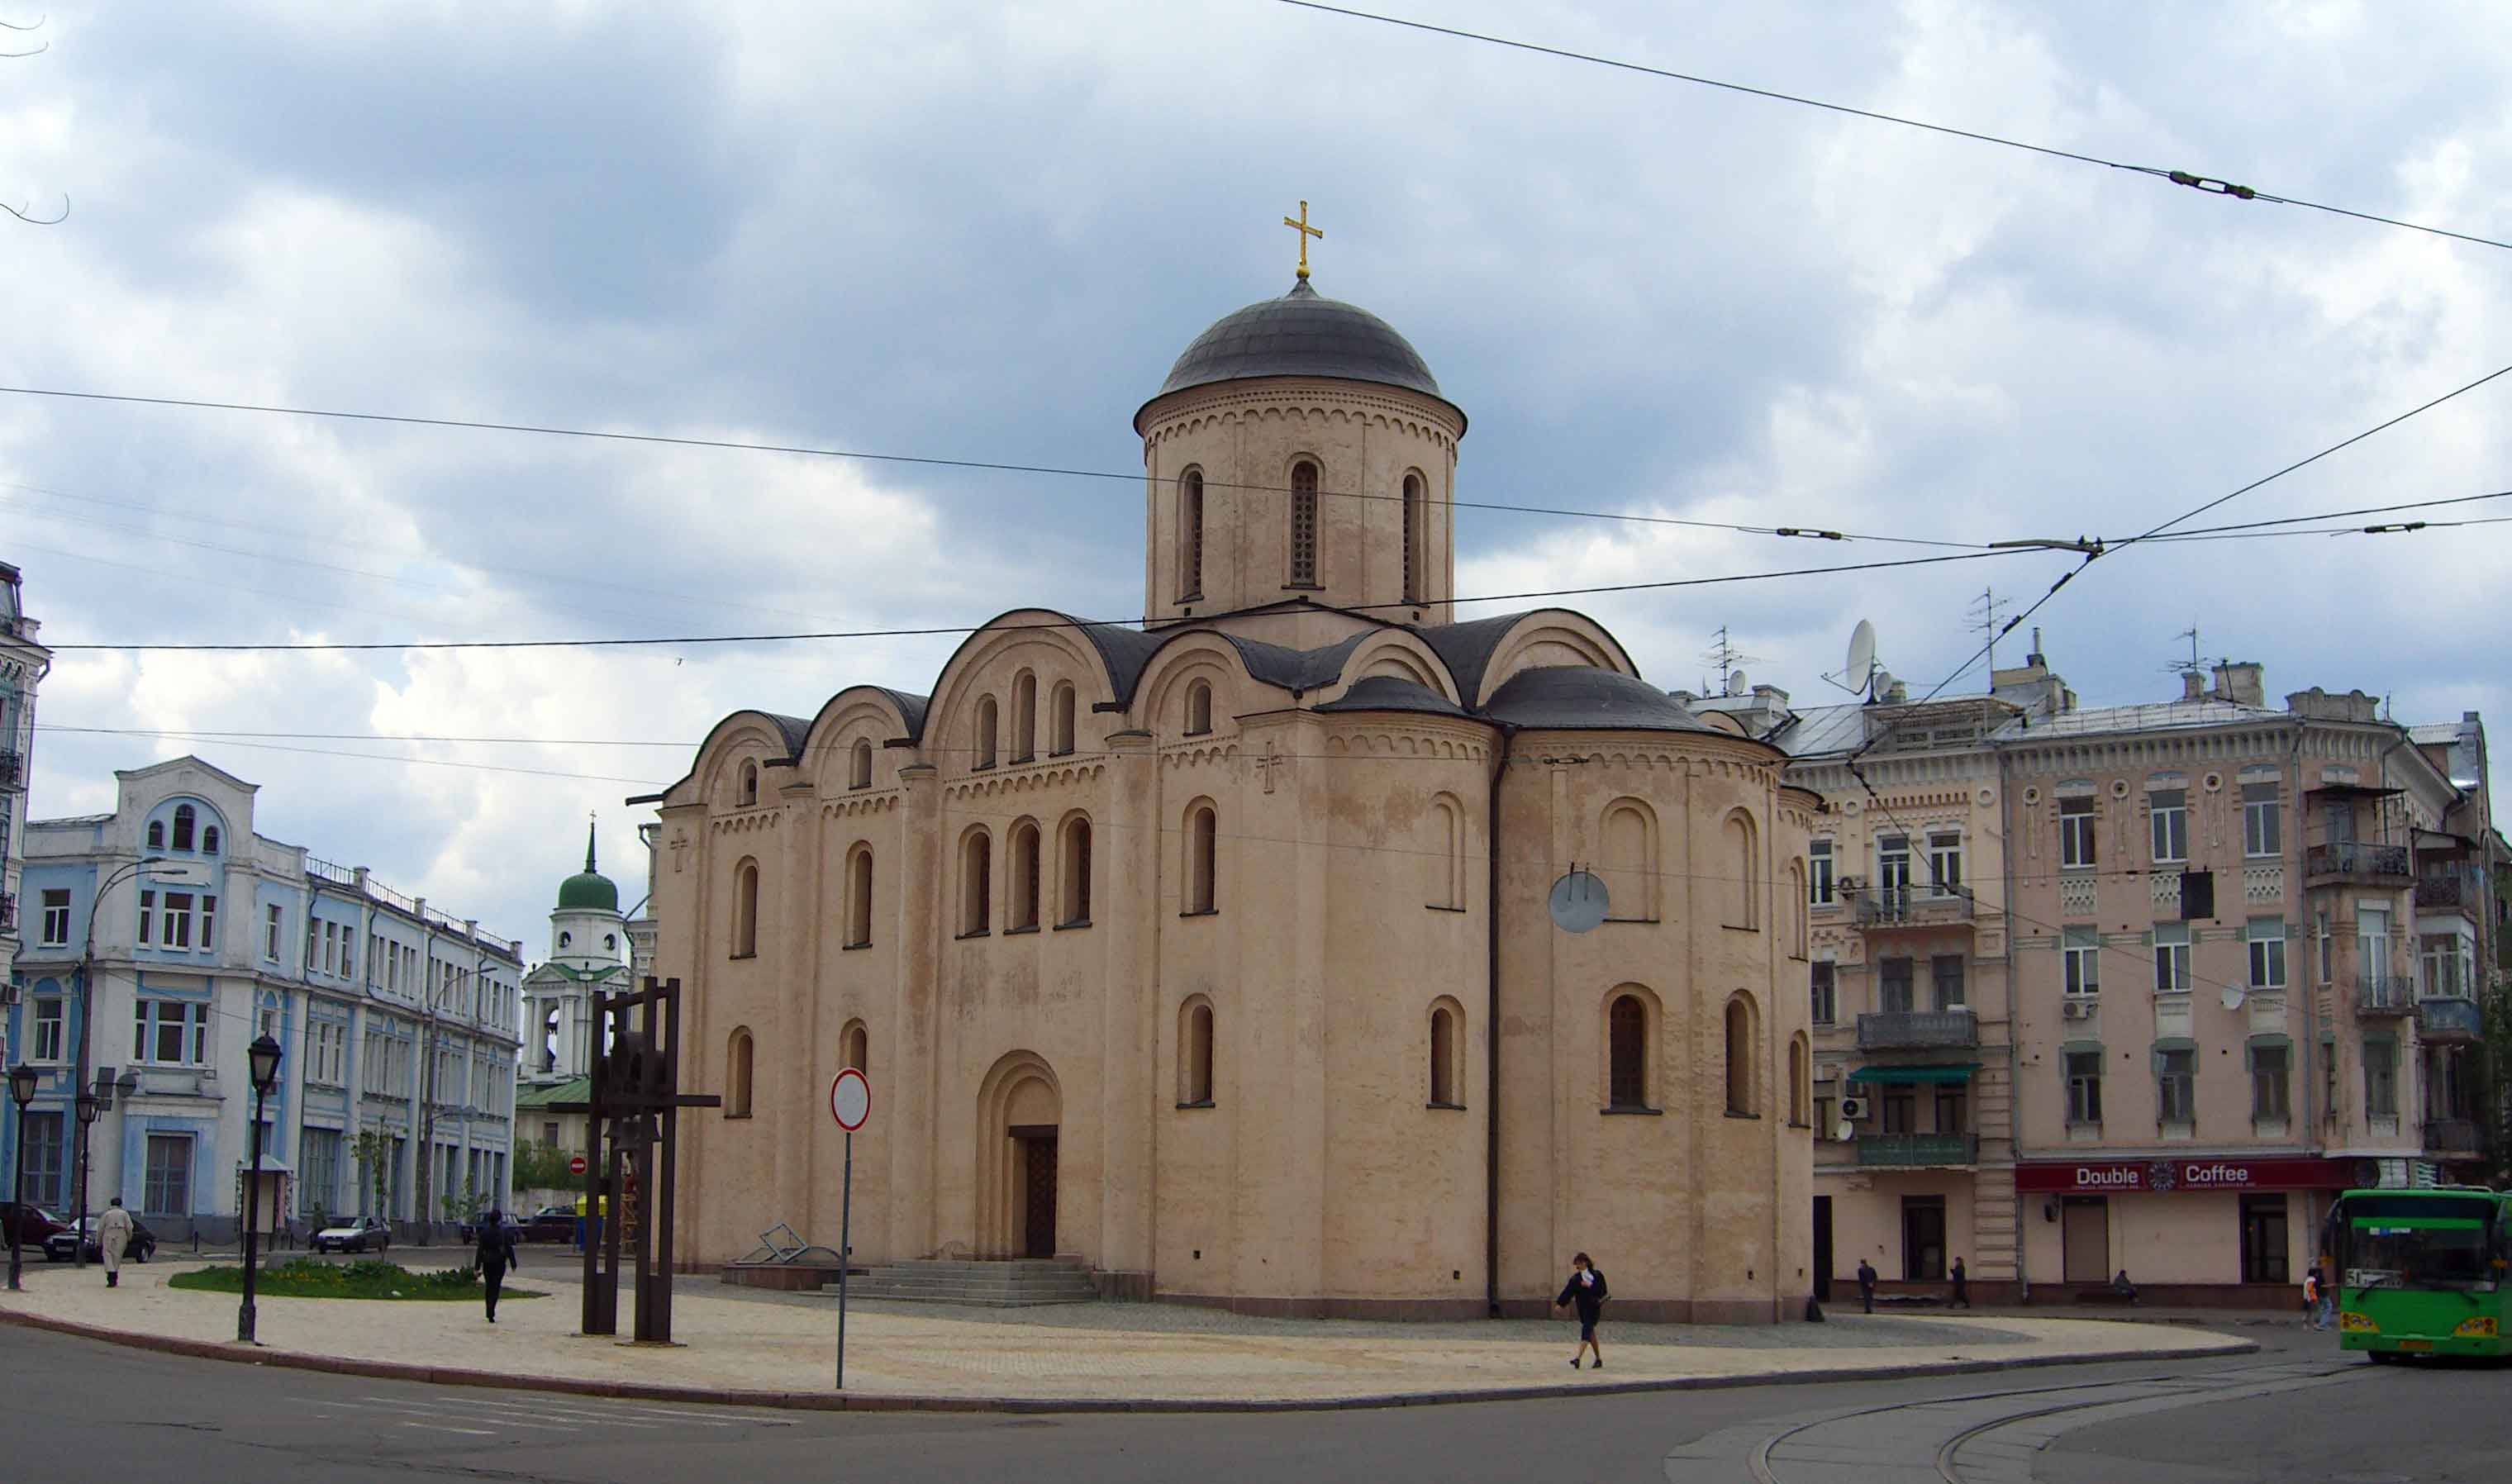 Десятинная церковь фото реконструкция